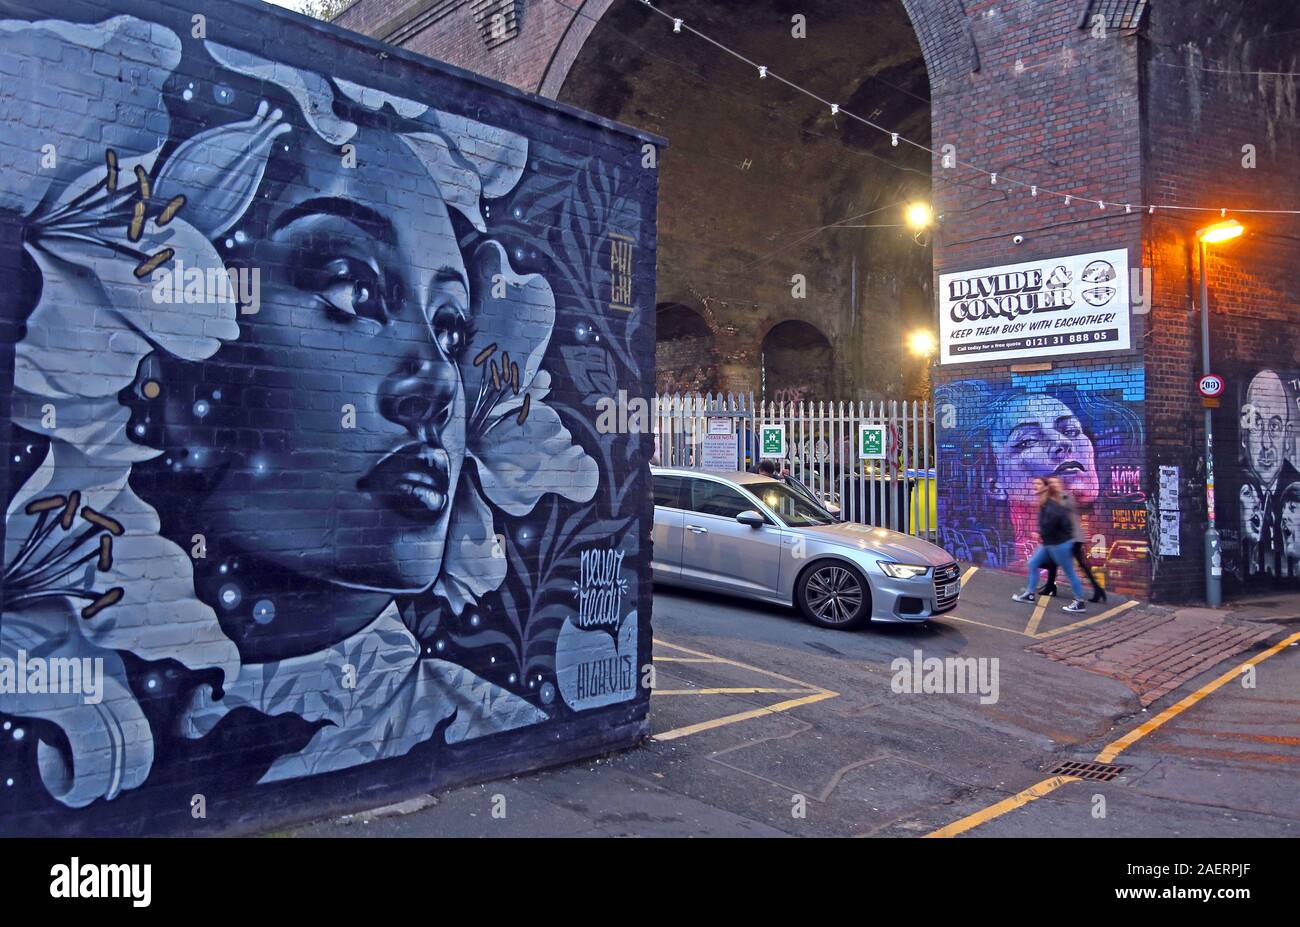 Visage,jamais prêt,haute visibilité,Graffiti Street art urbain,à la porte d'inondation St,Digbeth,Bordesley & Highgate,Birmingham,Ouest Midlands, Angleterre, Royaume-Uni, B5 5ST Banque D'Images